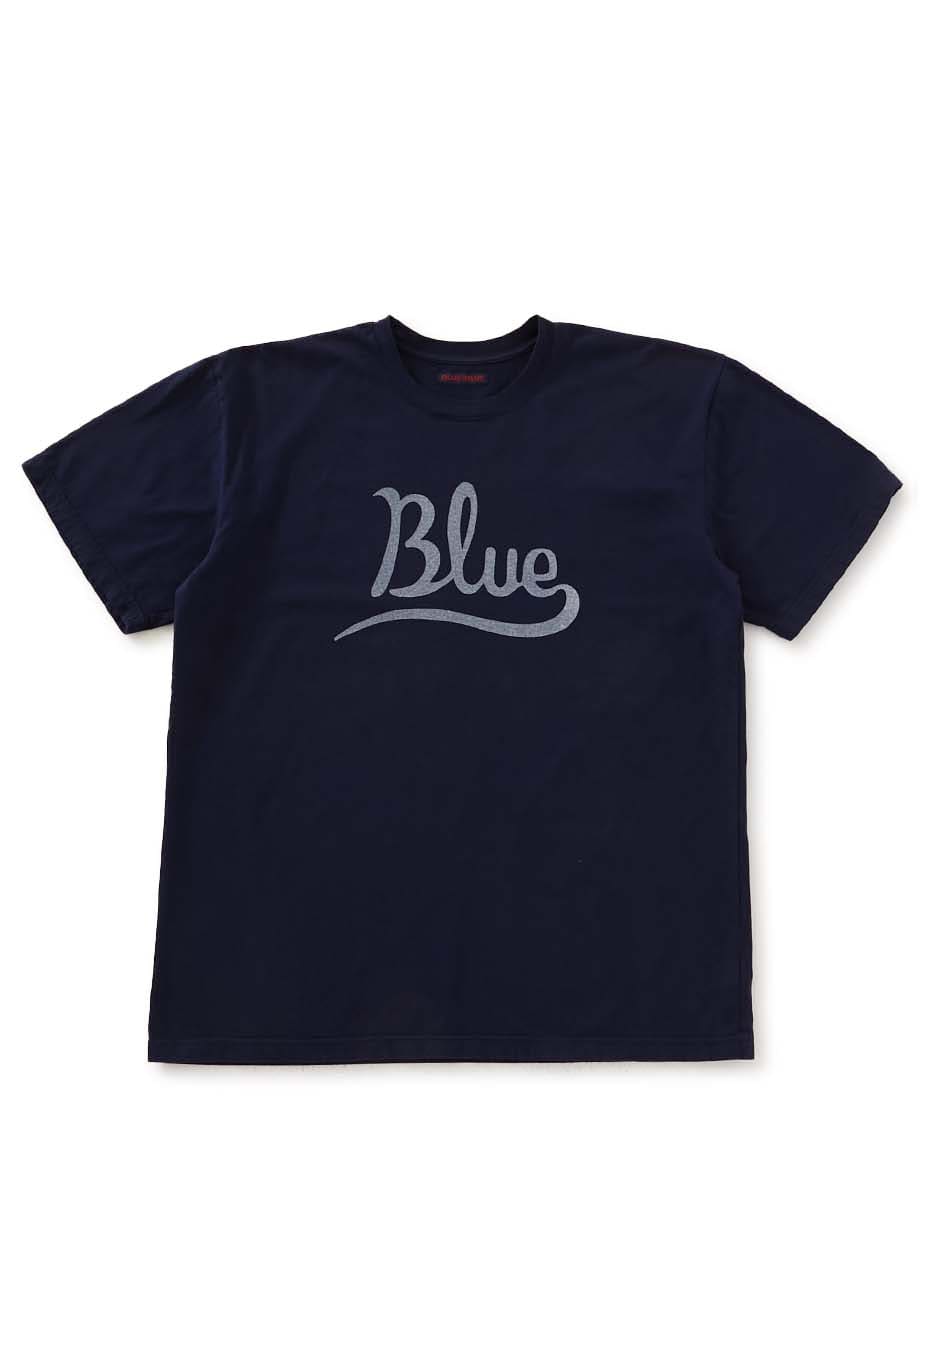 カーシブ Blue プリント Tシャツ